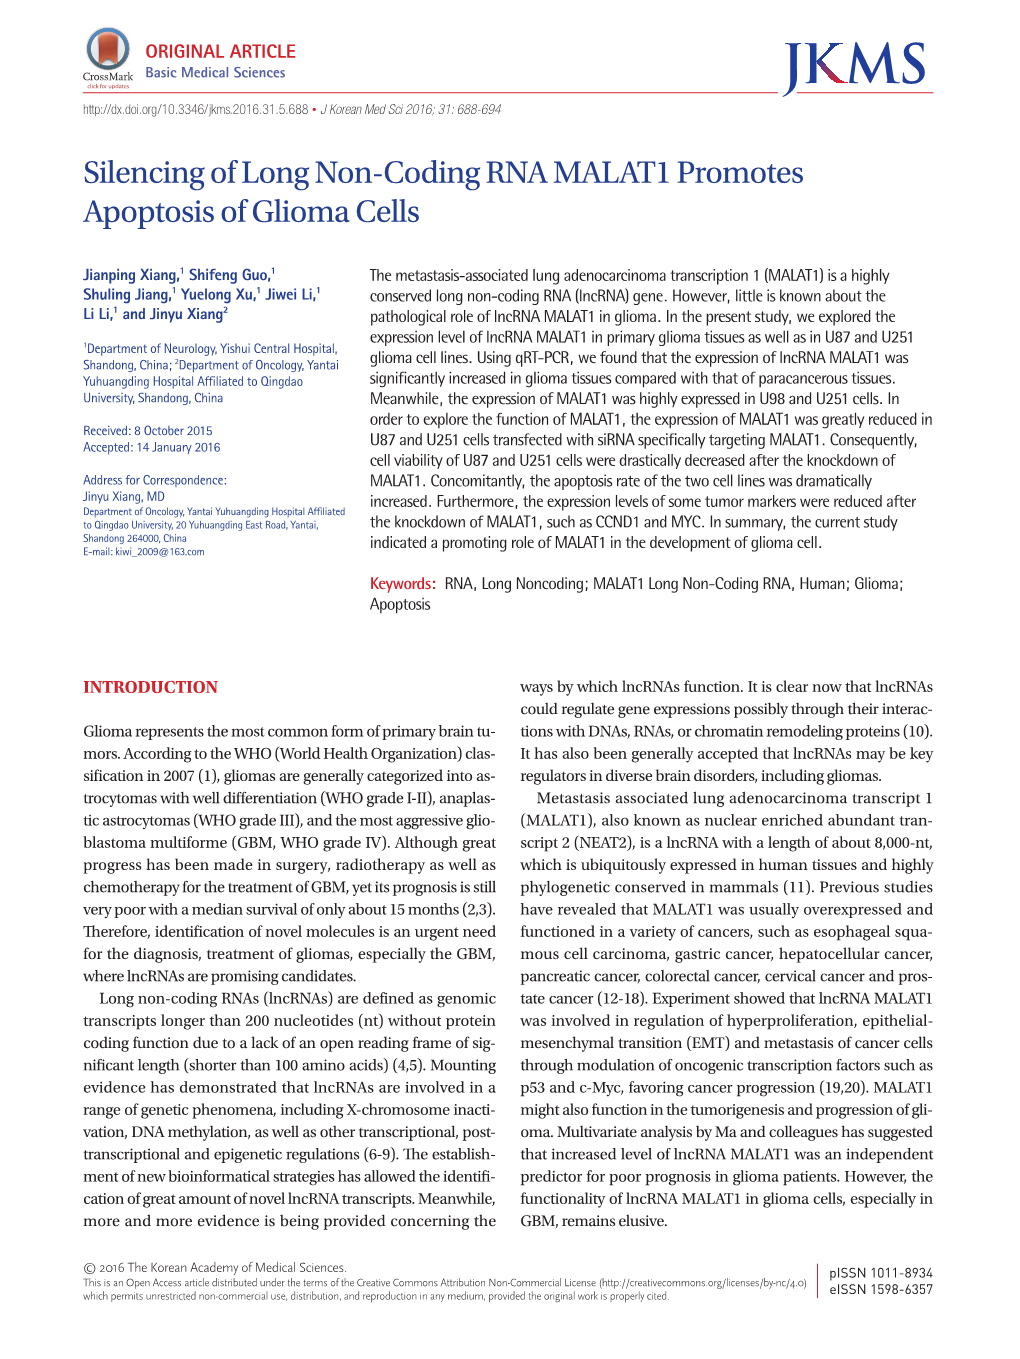 Silencing of Long Non-Coding RNA MALAT1 Promotes Apoptosis of Glioma Cells